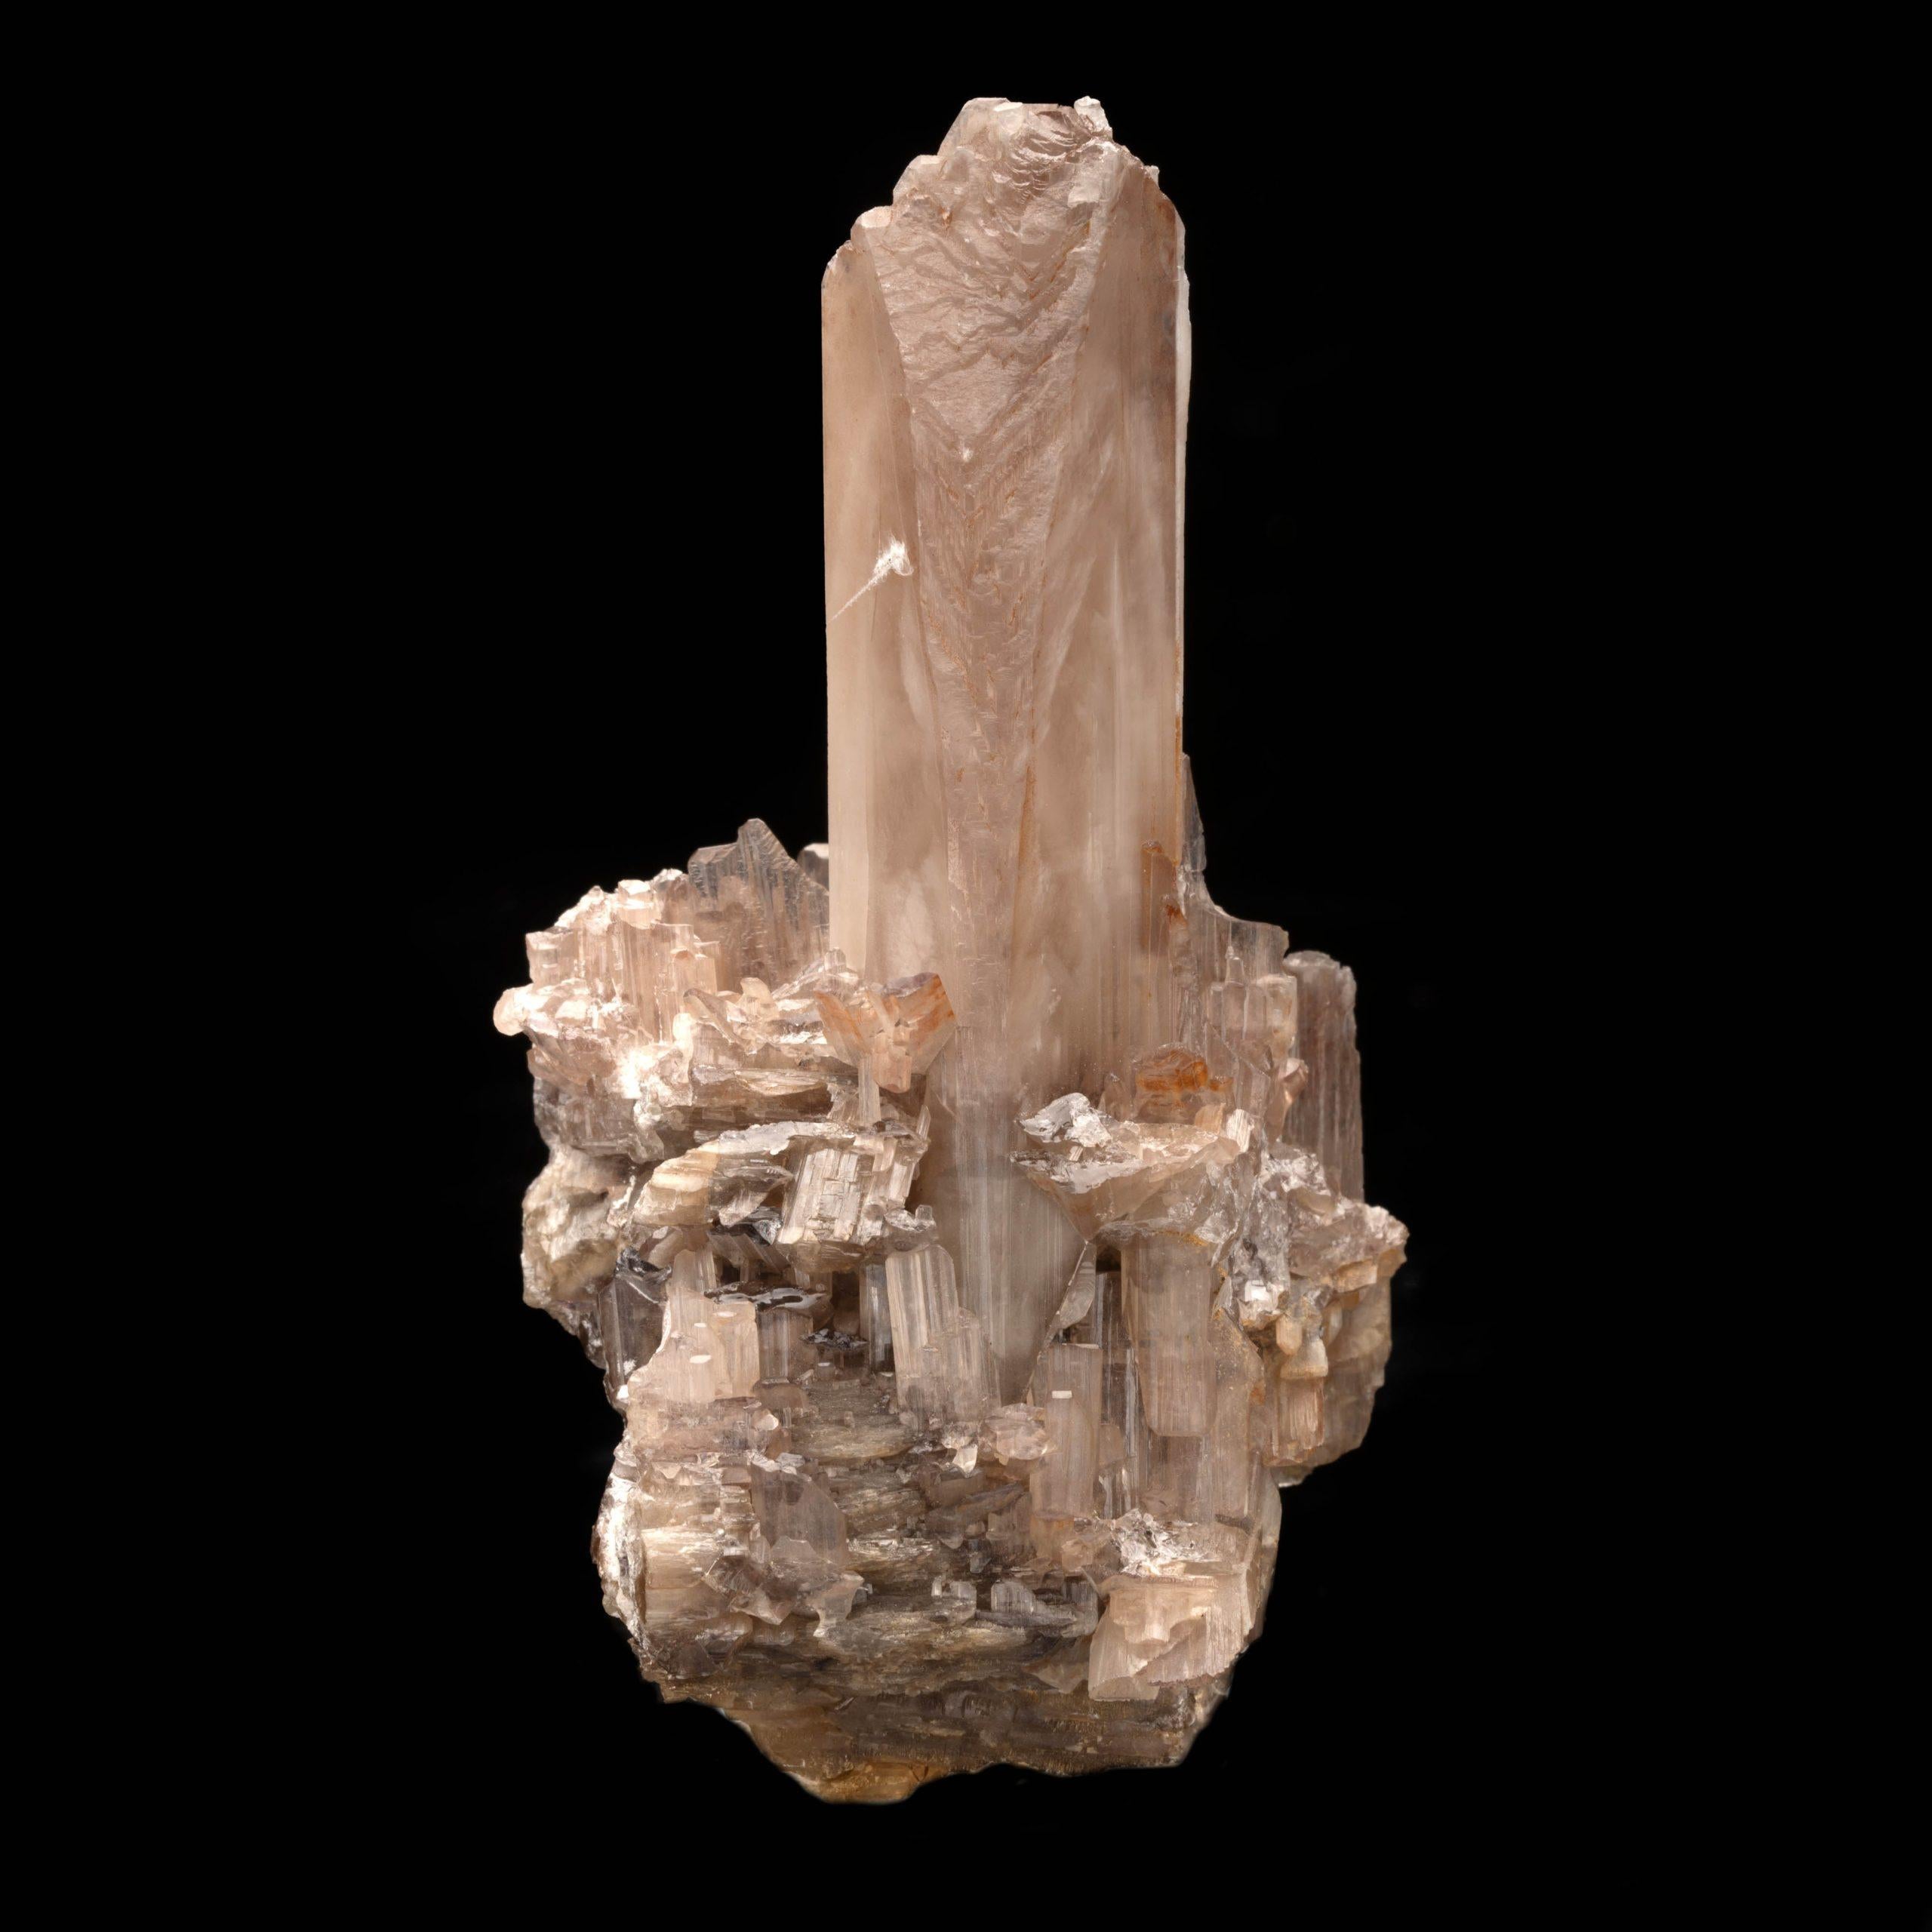 Tsumeb-Mine, Namibia

Ferrusit in Edelsteinqualität von dieser Fundstelle ist schwer zu bekommen und wird von Sammlern sehr geschätzt. Einige der besten Ferrusite der Welt kommen aus Namibia, und dieses schöne Exemplar ist keine Ausnahme. Dieser